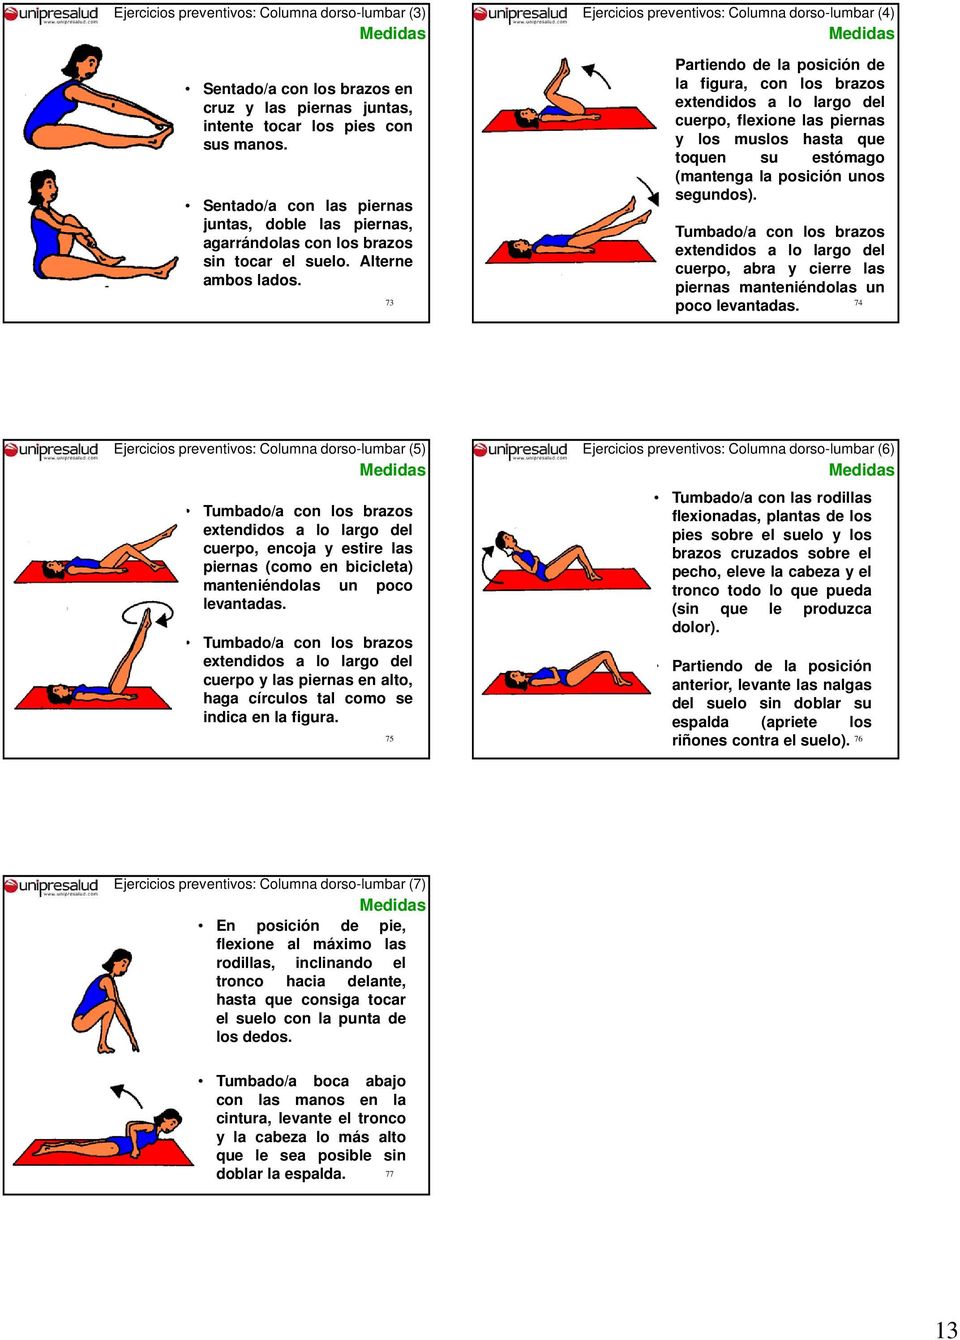 73 Ejercicios preventivos: Columna dorso-lumbar (4) Partiendo de la posición de la figura, con los brazos extendidos a lo largo del cuerpo, flexione las piernas y los muslos hasta que toquen su